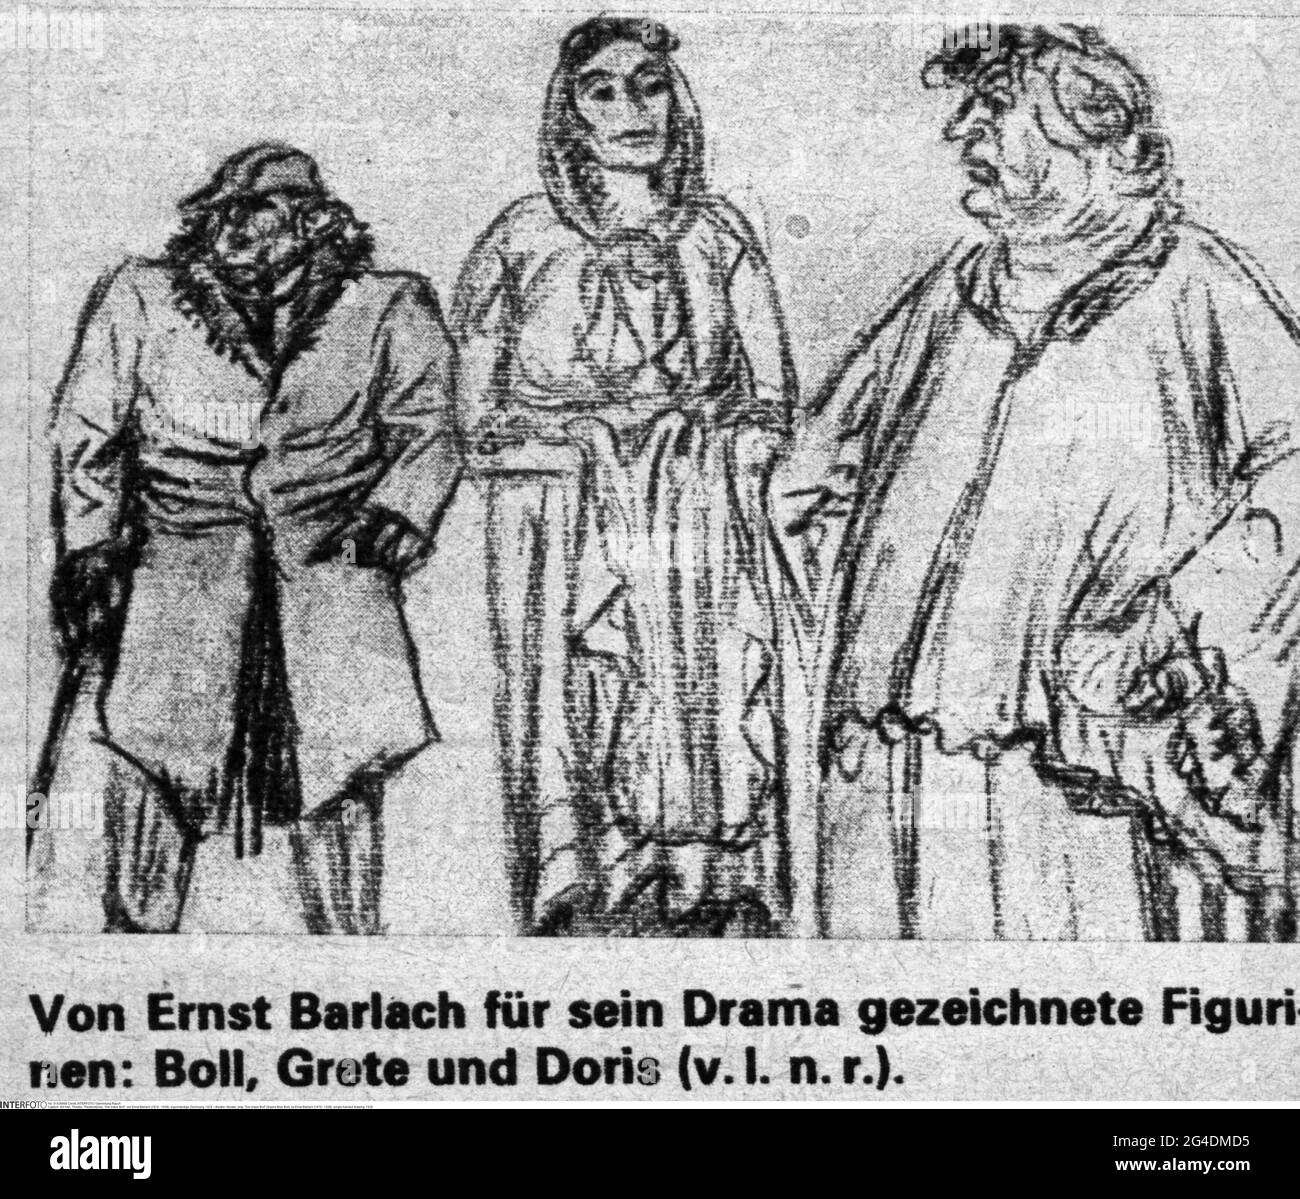 théâtre / théâtre, pièce, 'Der blaue Boll' (Squire Blue Boll), par Ernst Barlach (1870 - 1938), LE DROIT D'AUTEUR DE L'ARTISTE NE DOIT PAS ÊTRE AUTORISÉ Banque D'Images